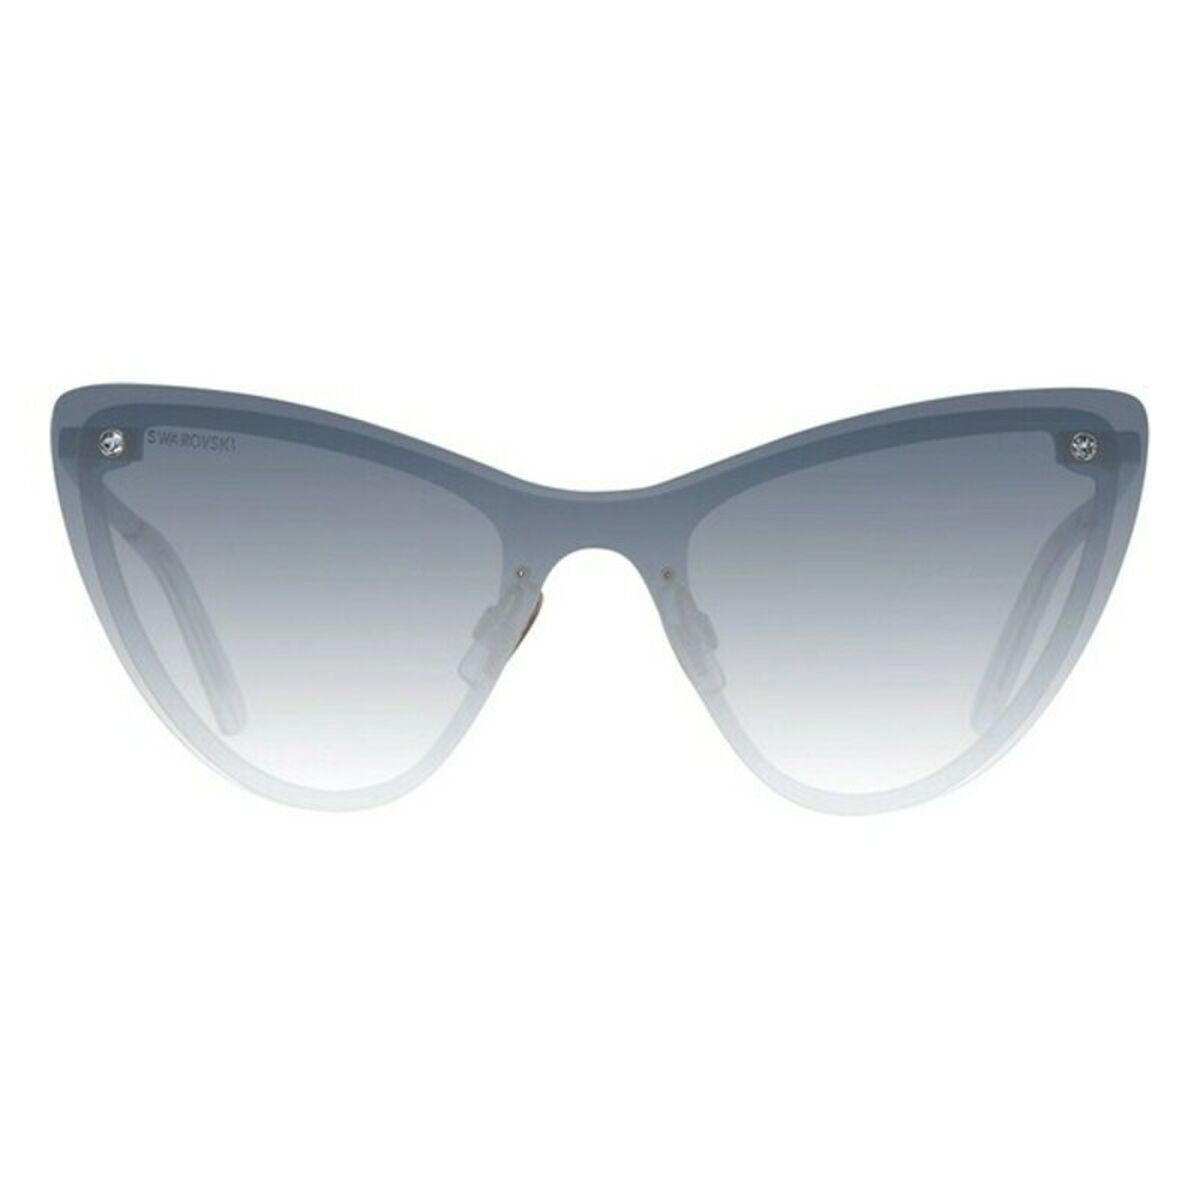 Kaufe Damensonnenbrille Swarovski SK0200-0084W bei AWK Flagship um € 71.00